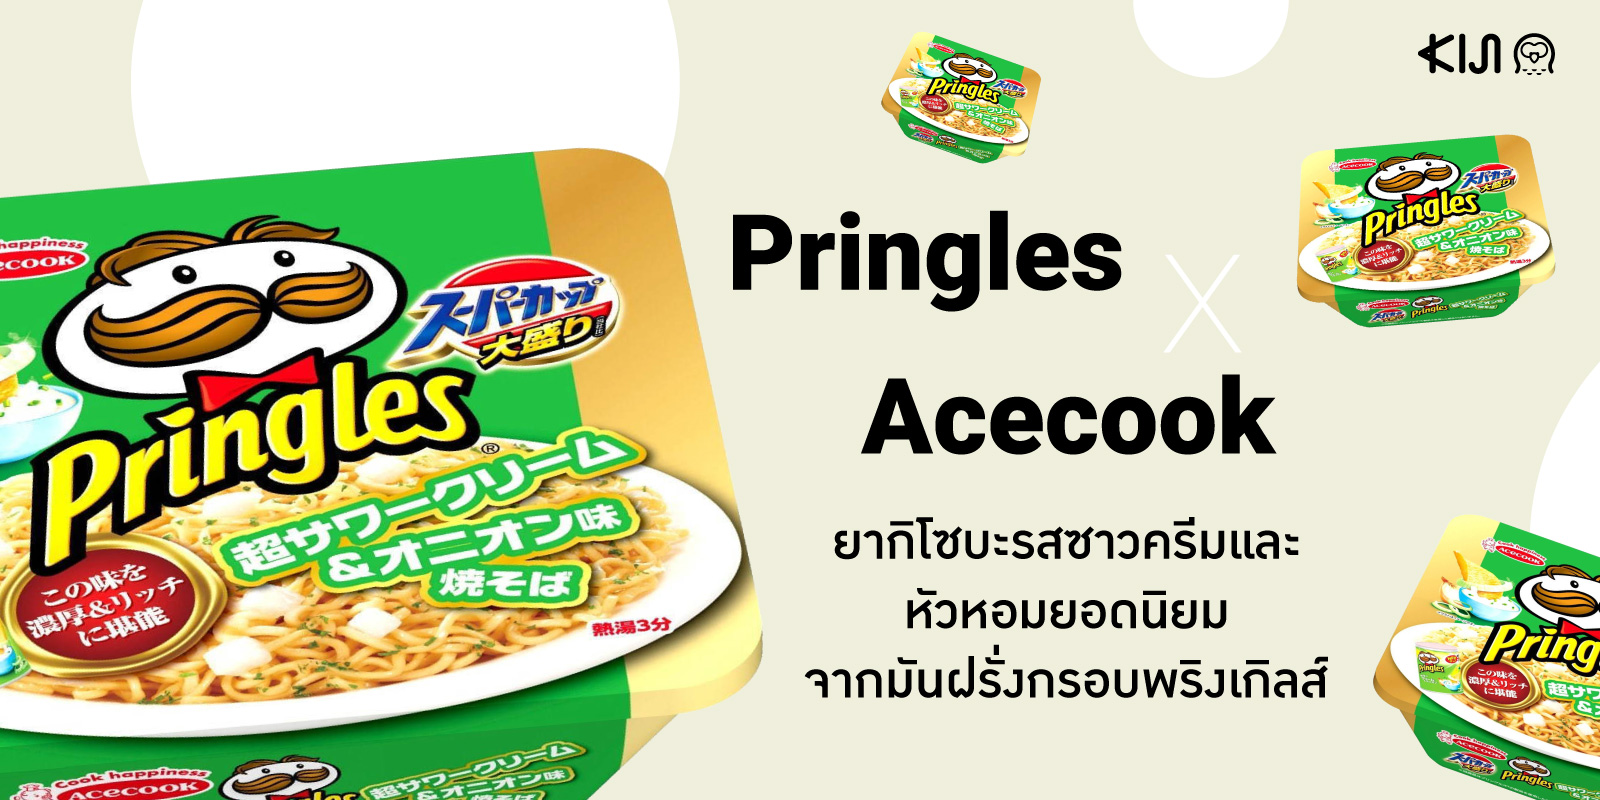 กลับมาอีกครั้งกับ Pringles ยากิโซบะรสซาวครีมและหัวหอมหลังจากที่ได้มาทำให้คนติดใจในปี 2018